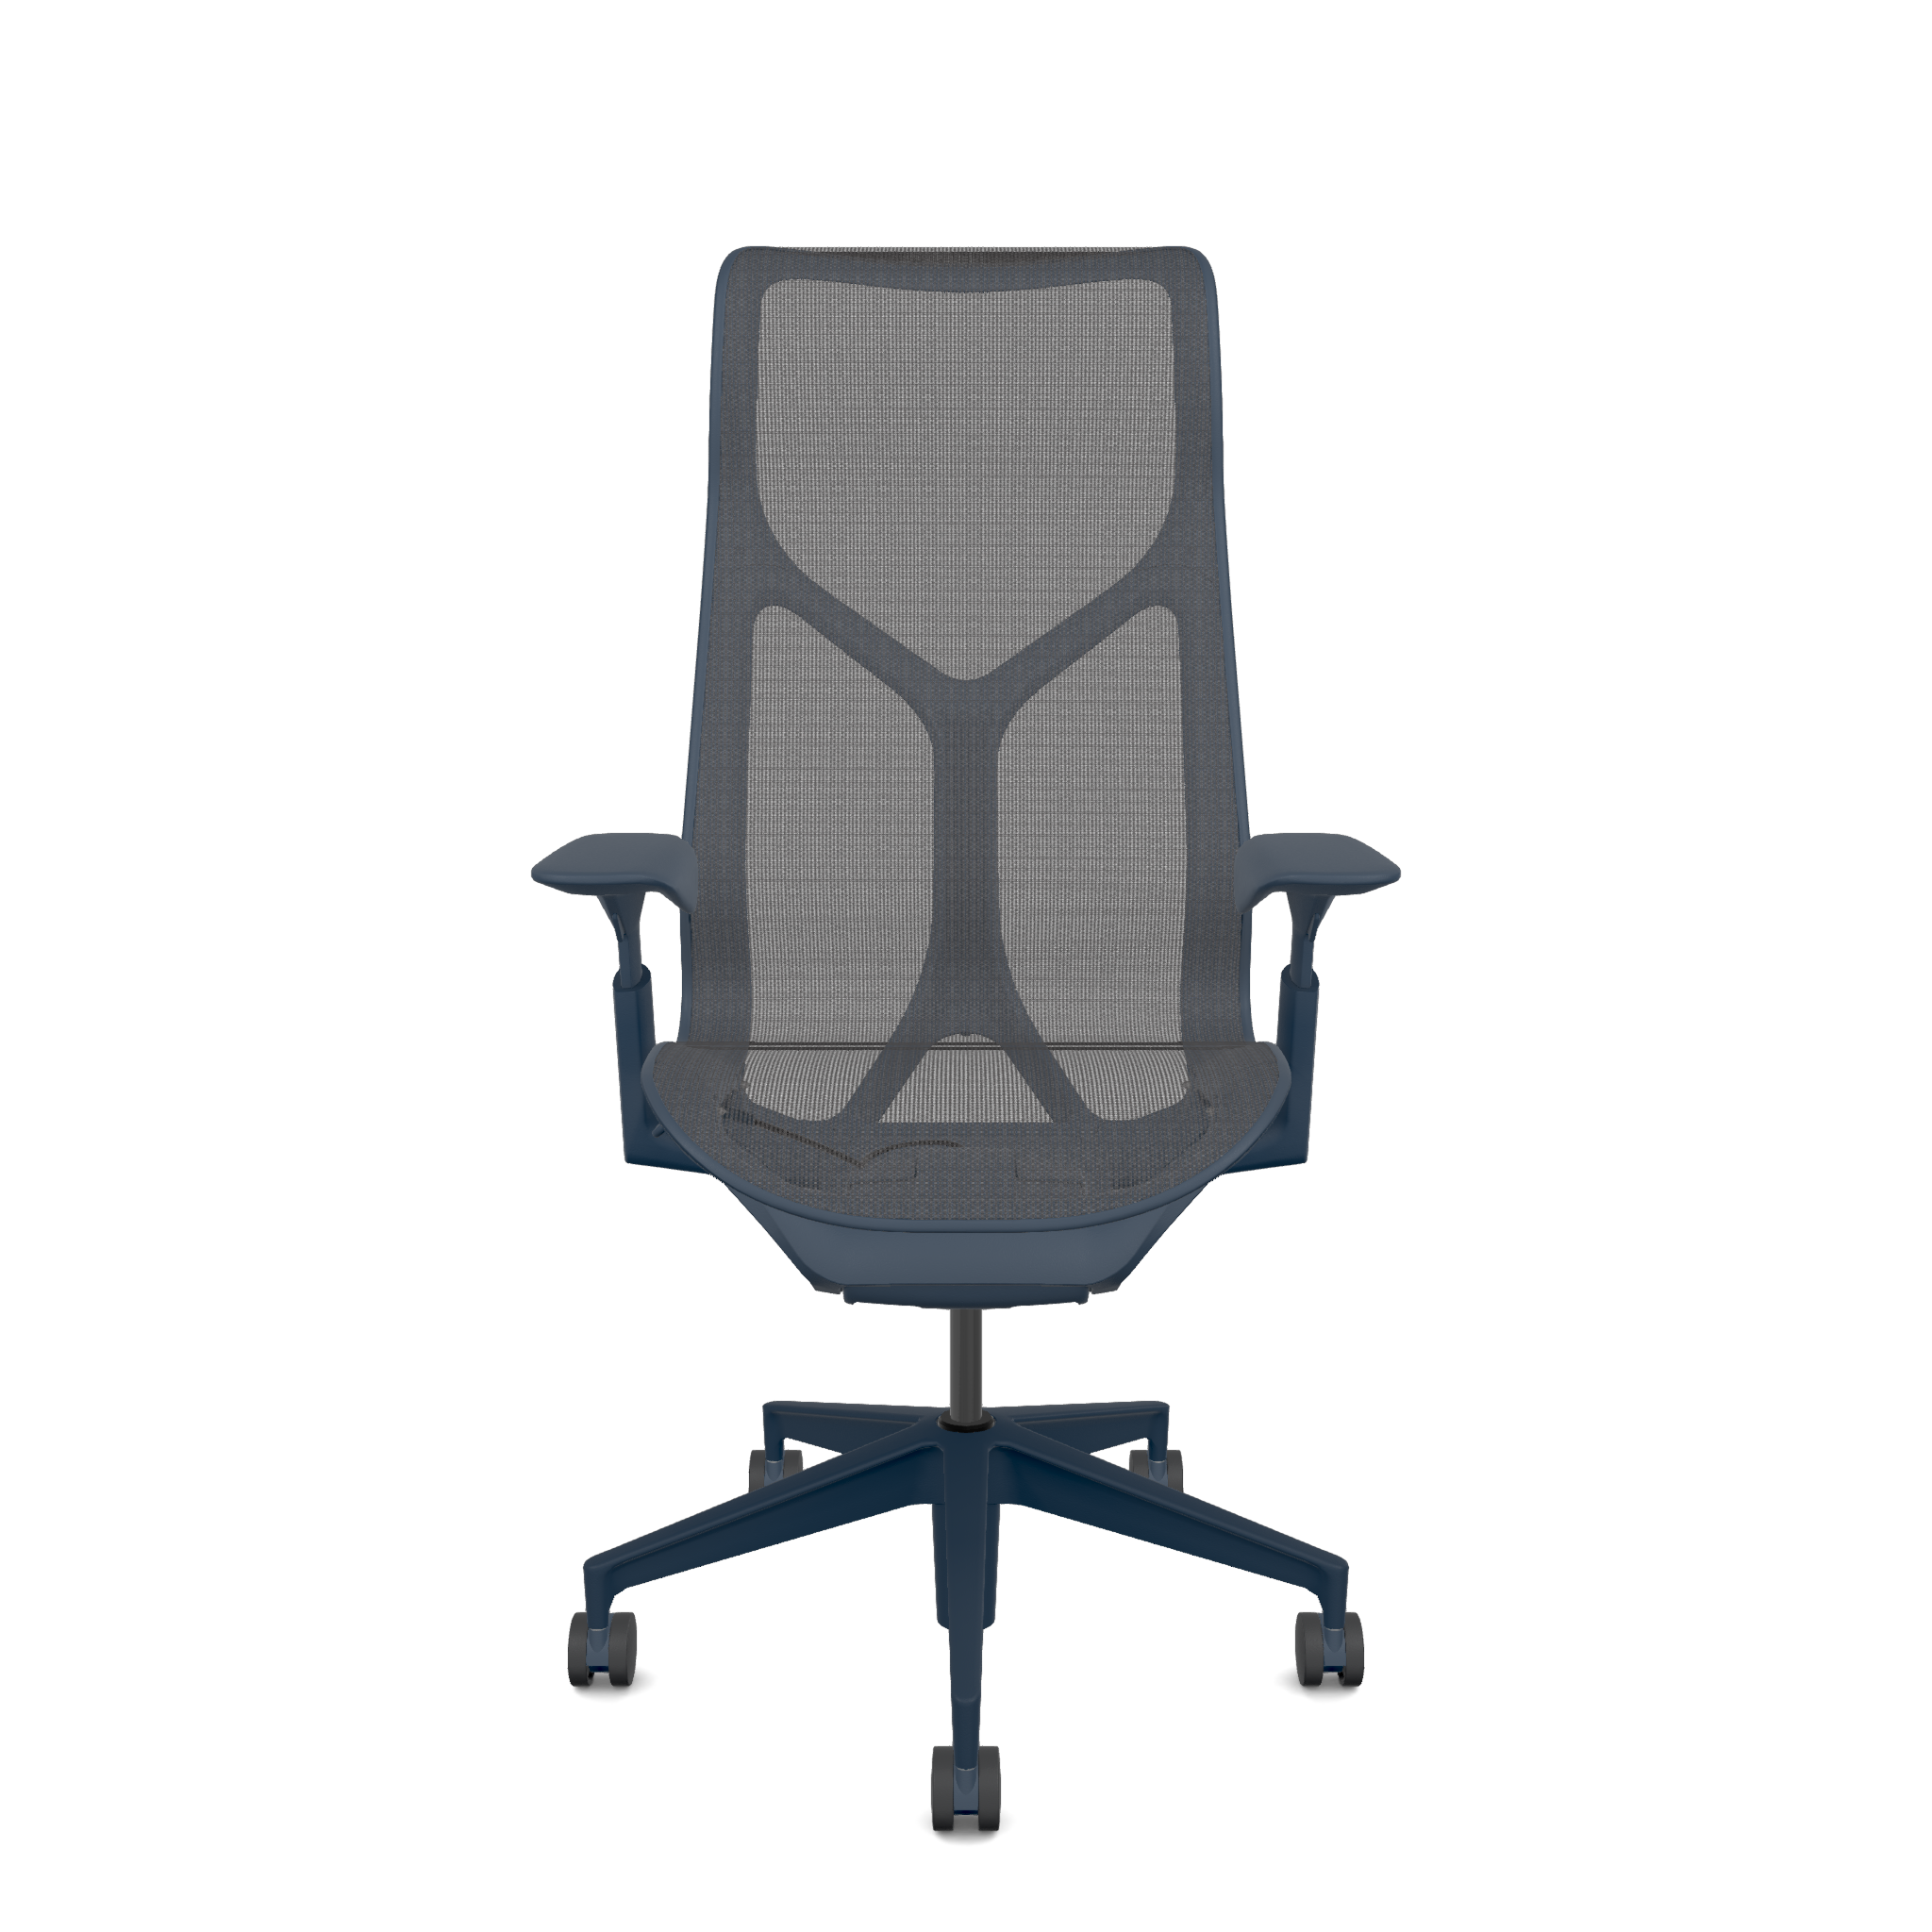 Cosm Chair - Nightfall & Graphite